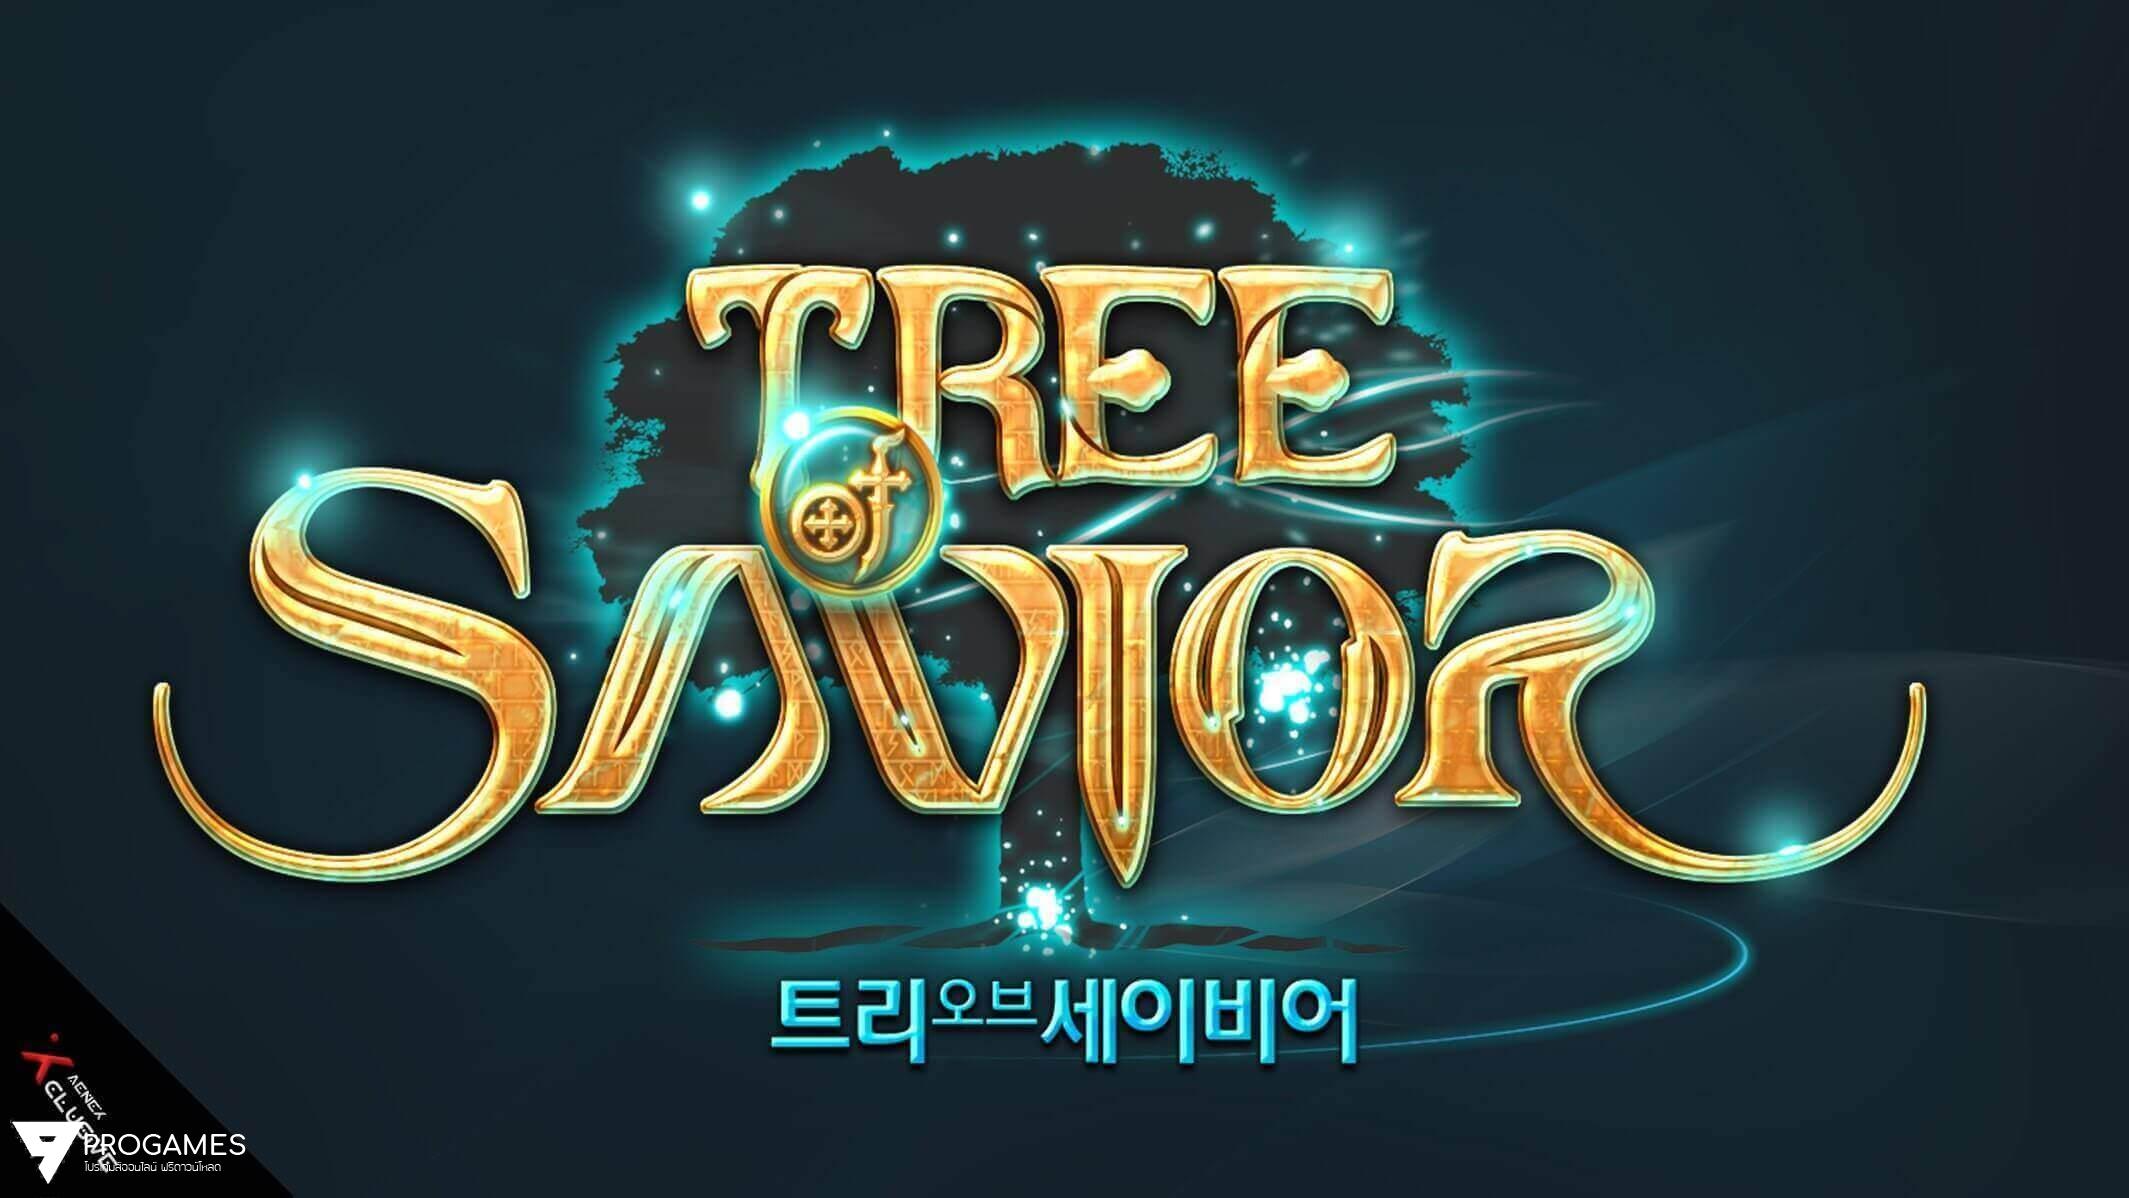 เตรียมทดสอบและแจกโปรโกงเกม Tree of savior เร็วๆนี้